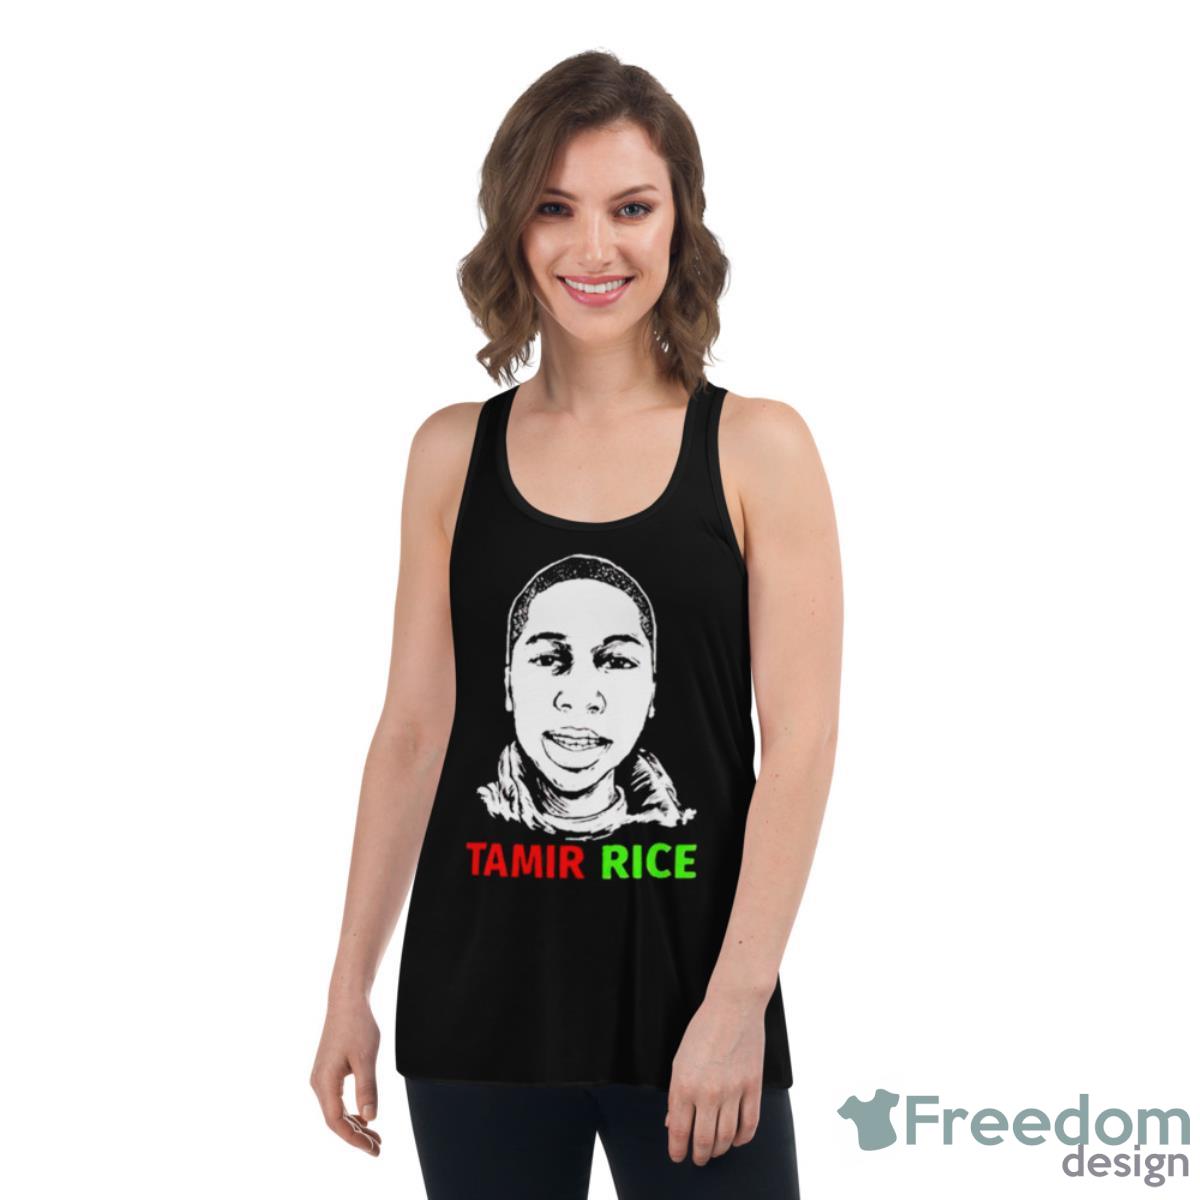 Tamir Rice T shirt